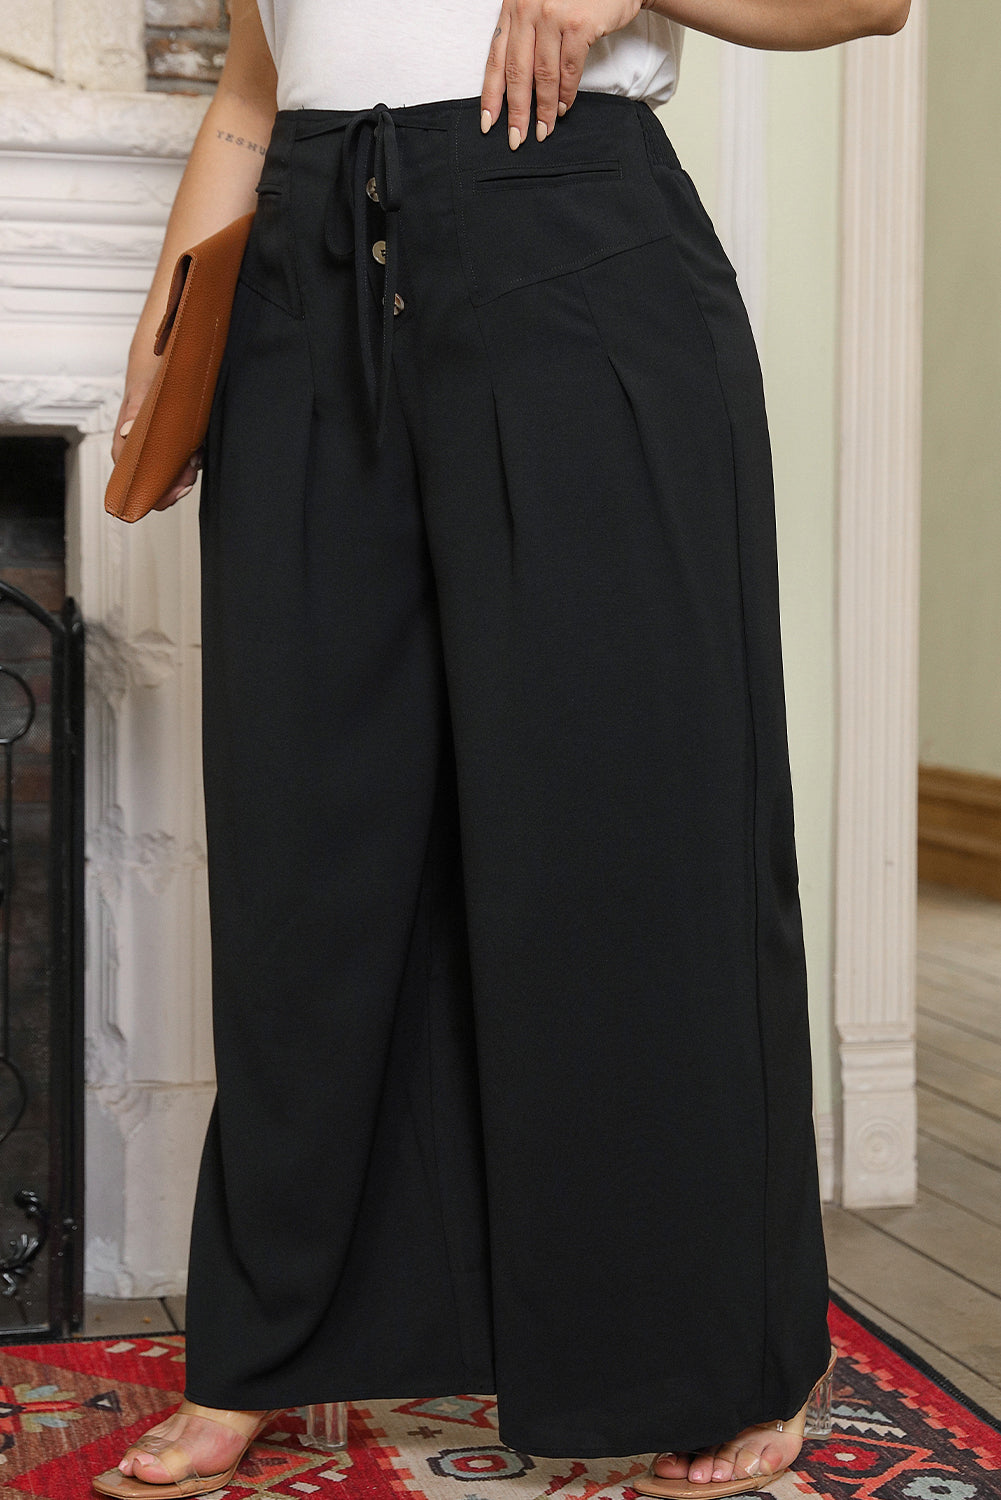 Crne hlače veće veličine sa širokim nogavicama na vezanje u struku